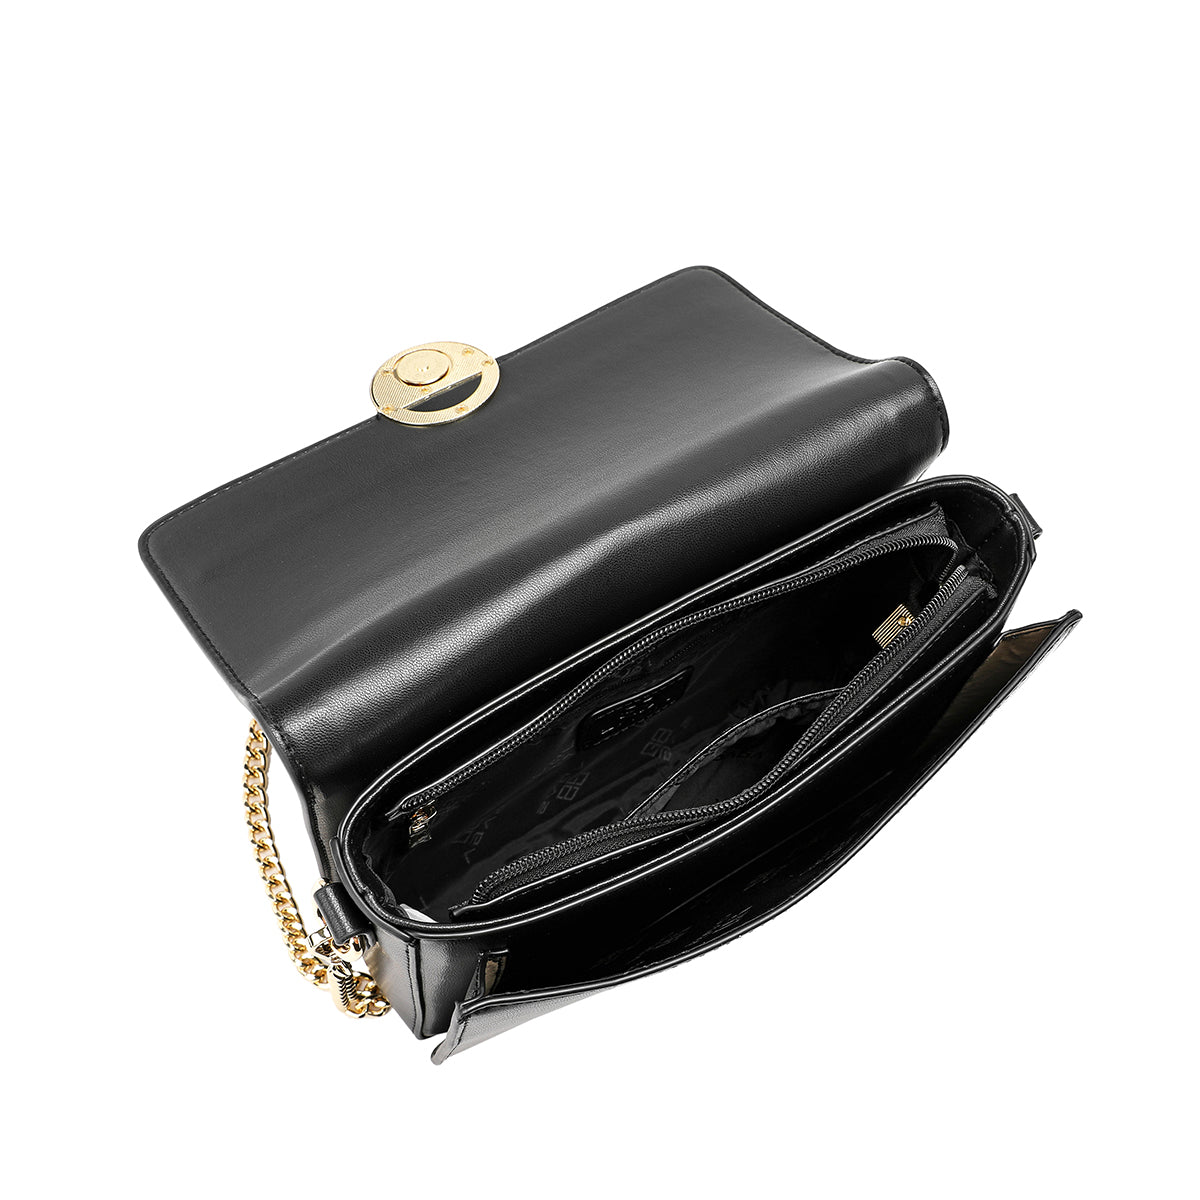 A luxurious handbag made of 100% microfiber, width 23 cm, black color